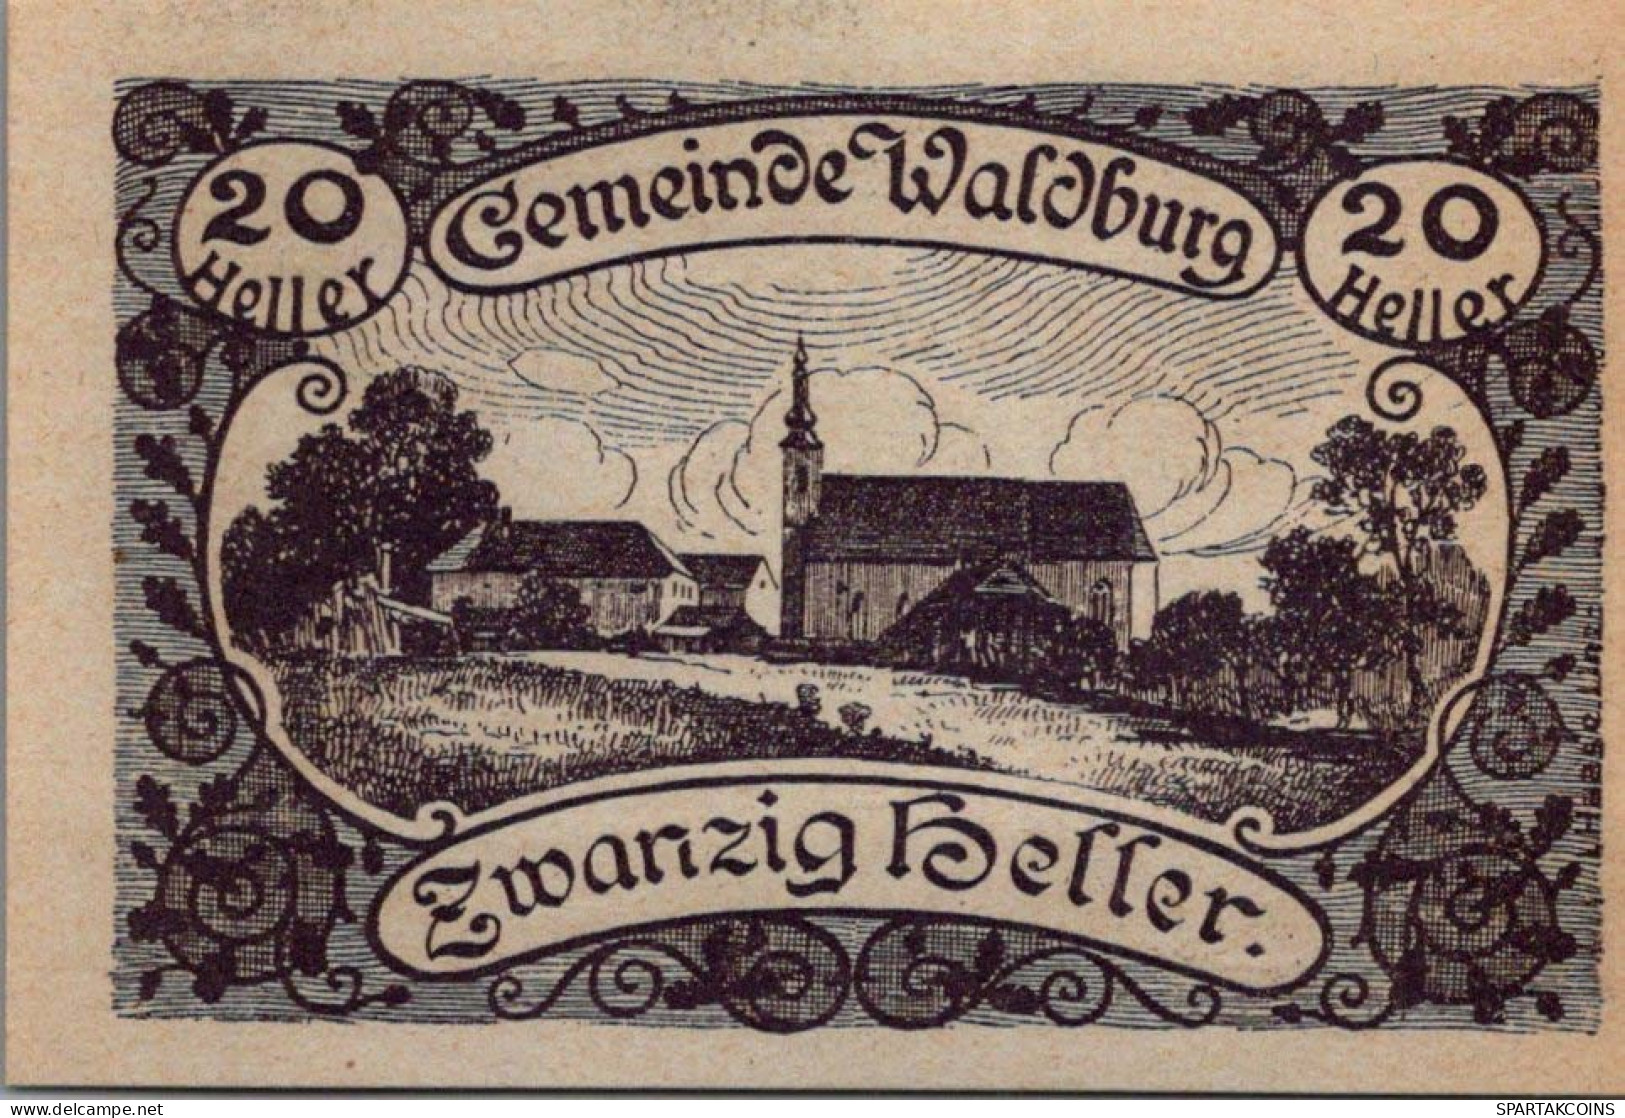 20 HELLER 1920 Stadt WALDBURG Oberösterreich Österreich Notgeld Papiergeld Banknote #PG785 - Lokale Ausgaben